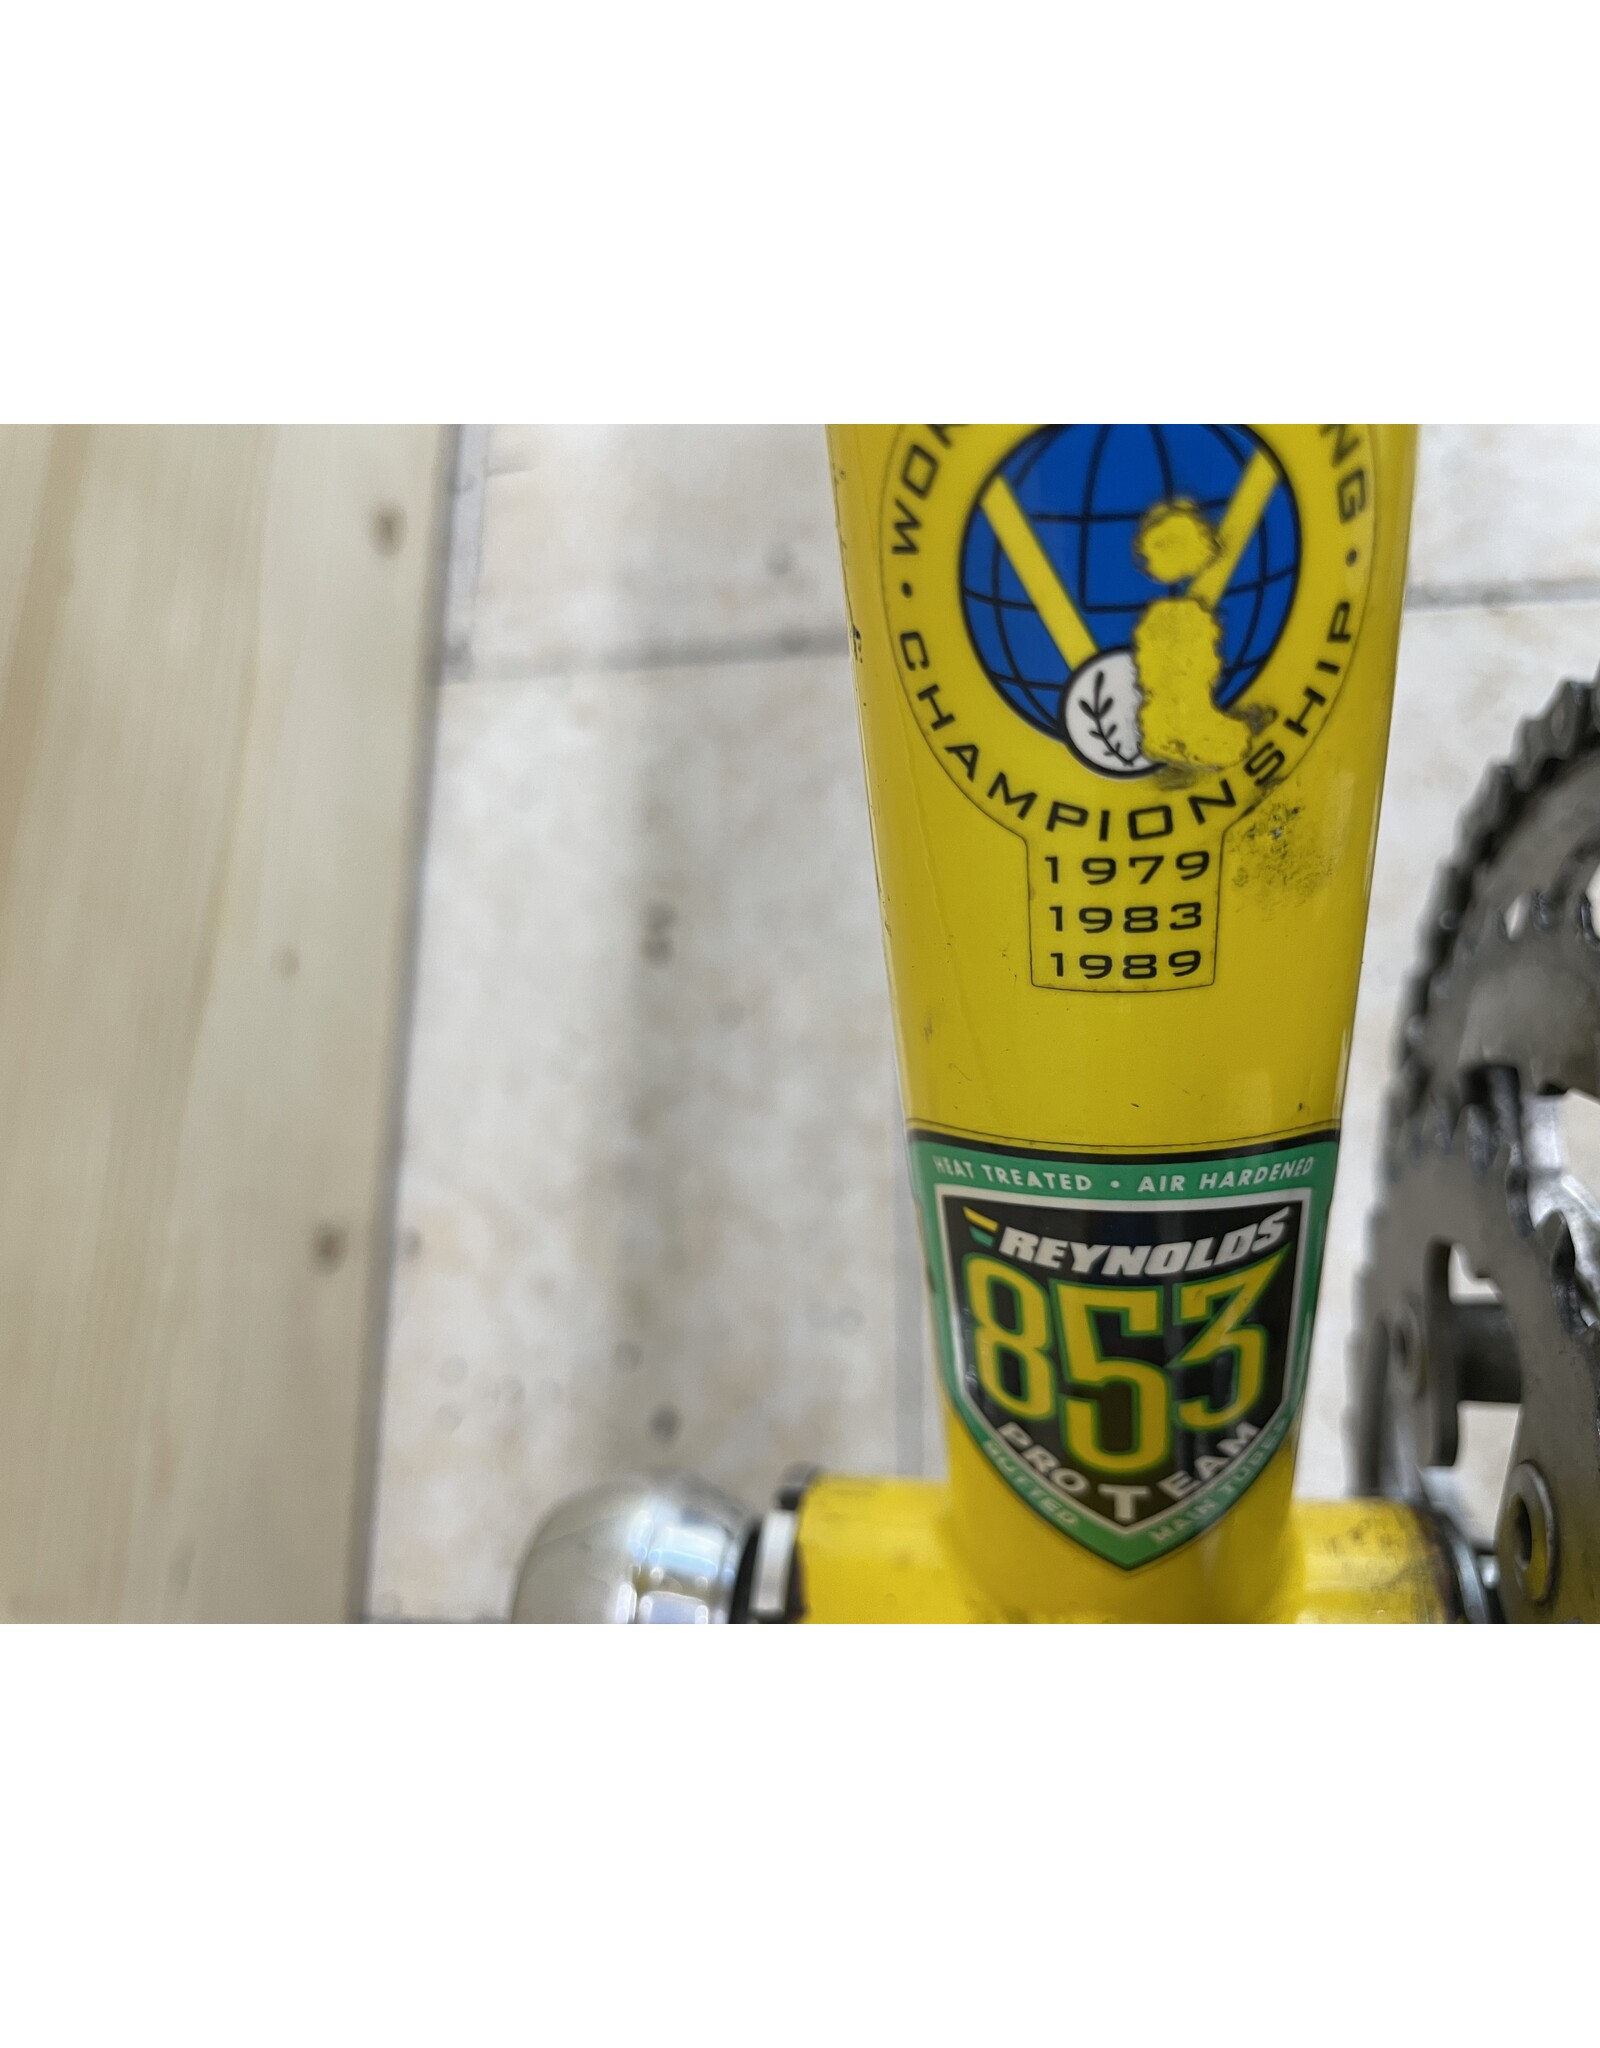 Vélo de route usagé Lemond 53cm - 12456